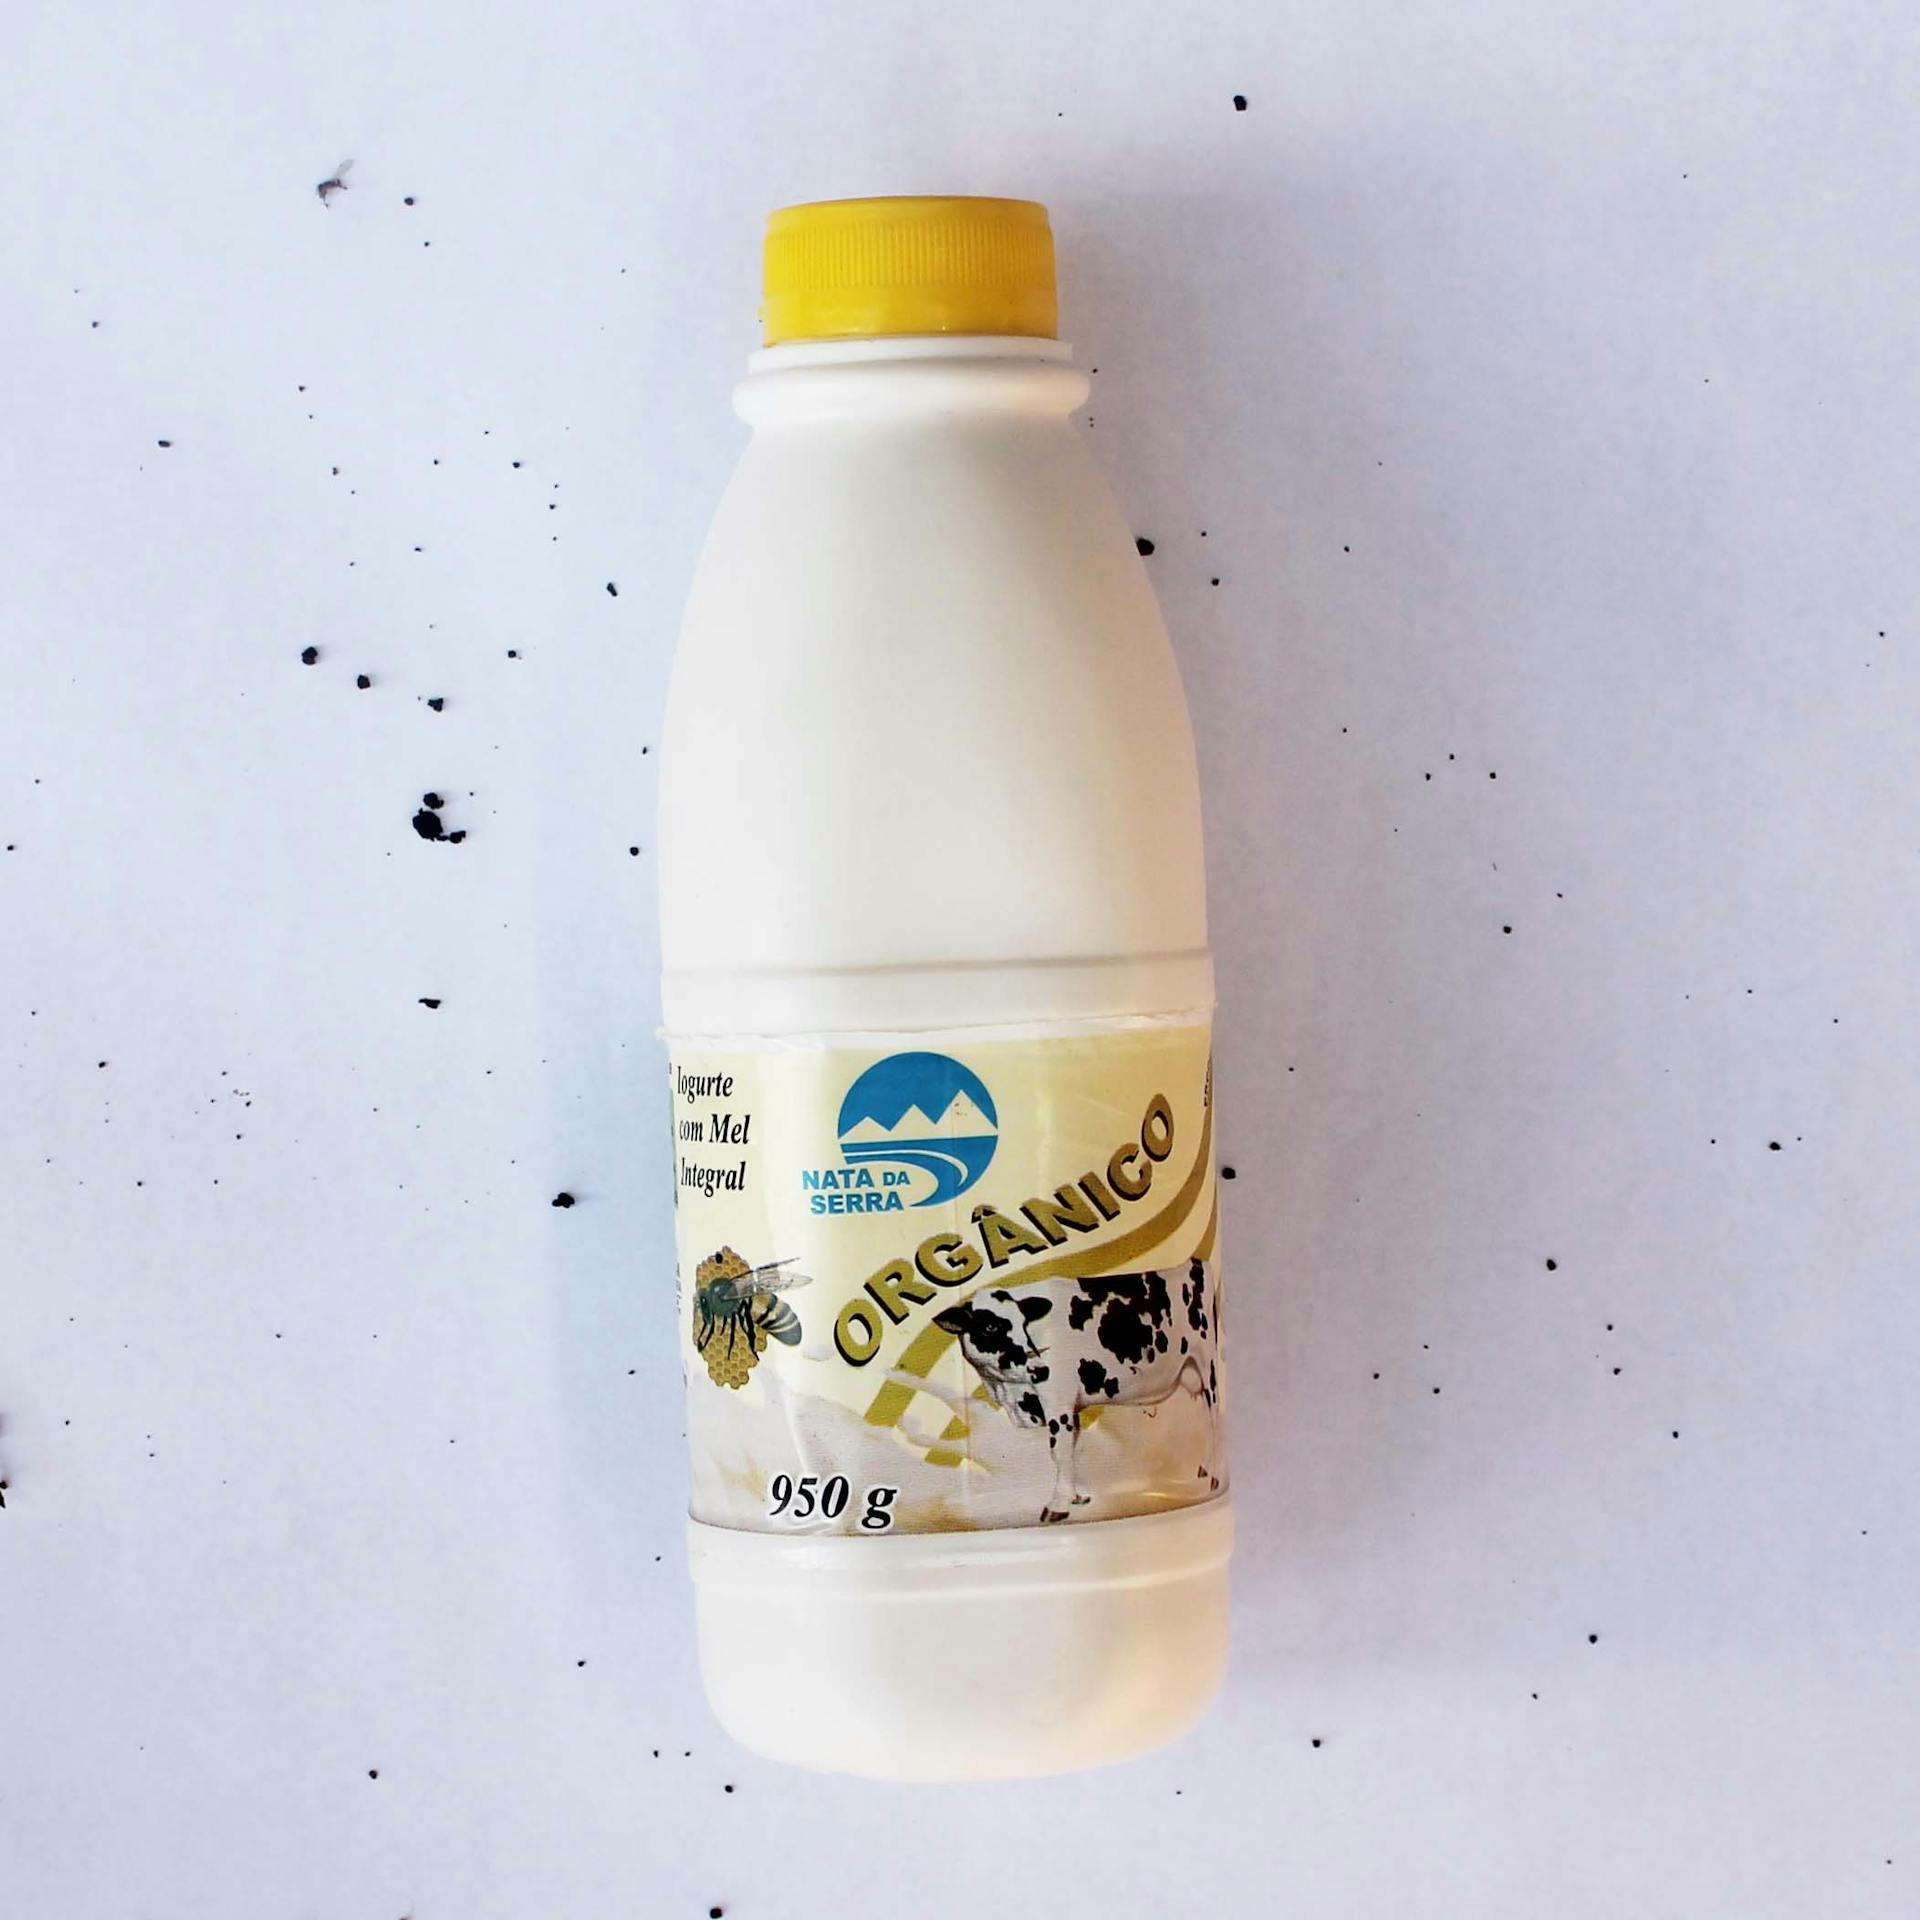 Iogurte de Mel Integral Orgânico 950g - Nata da Serra